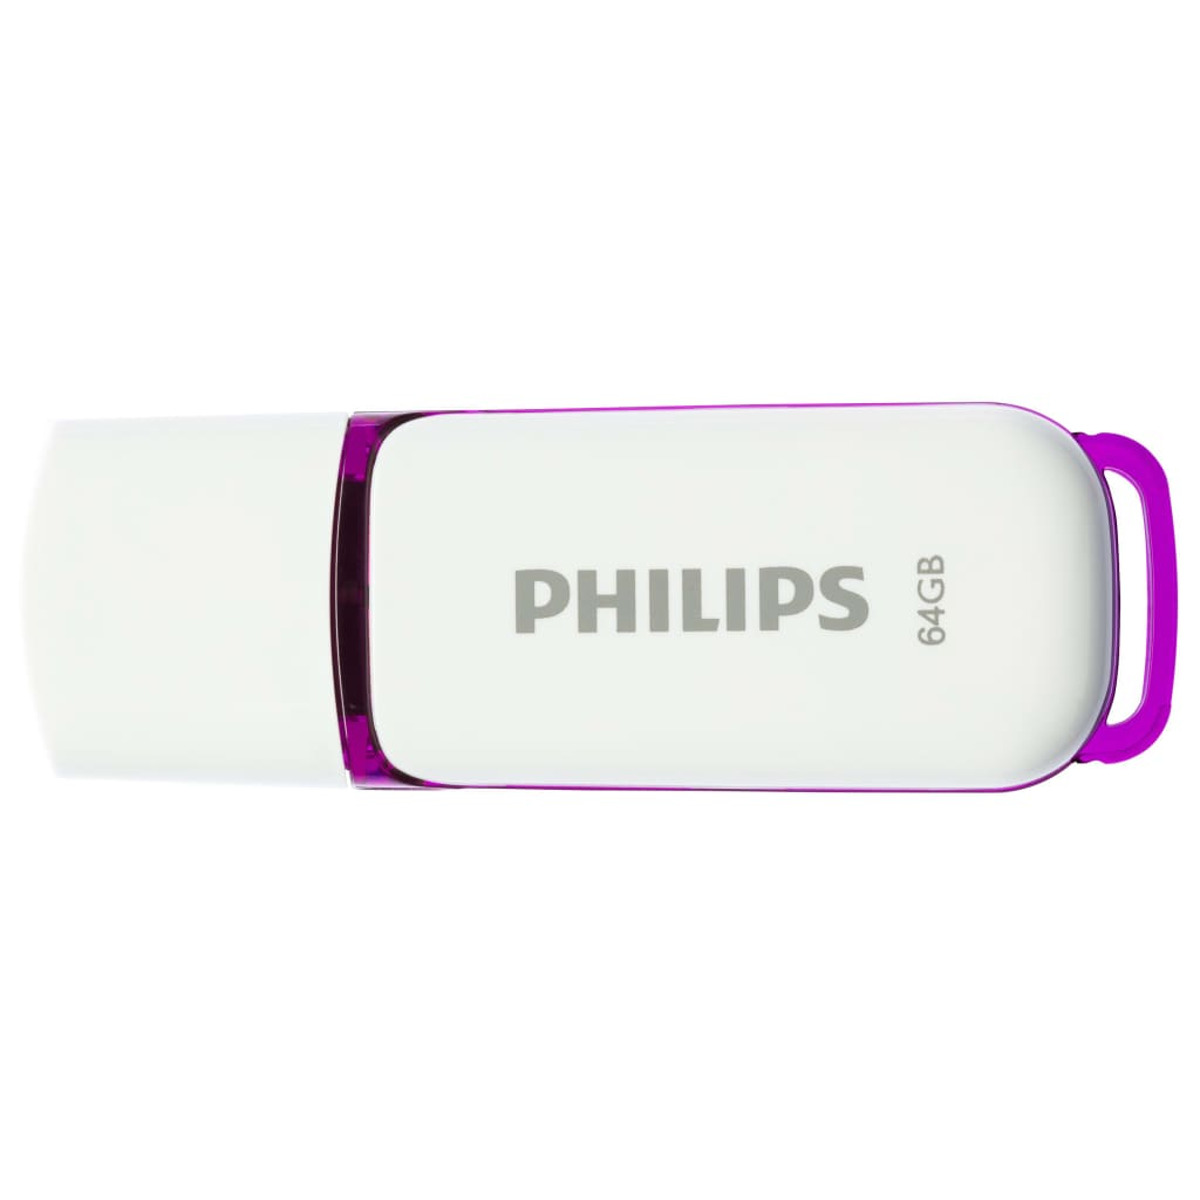 Magic weiss (Weiß, 25 MB/s, Purple®, USB-Stick 64GB PHILIPS Edition GB) 64 Snow